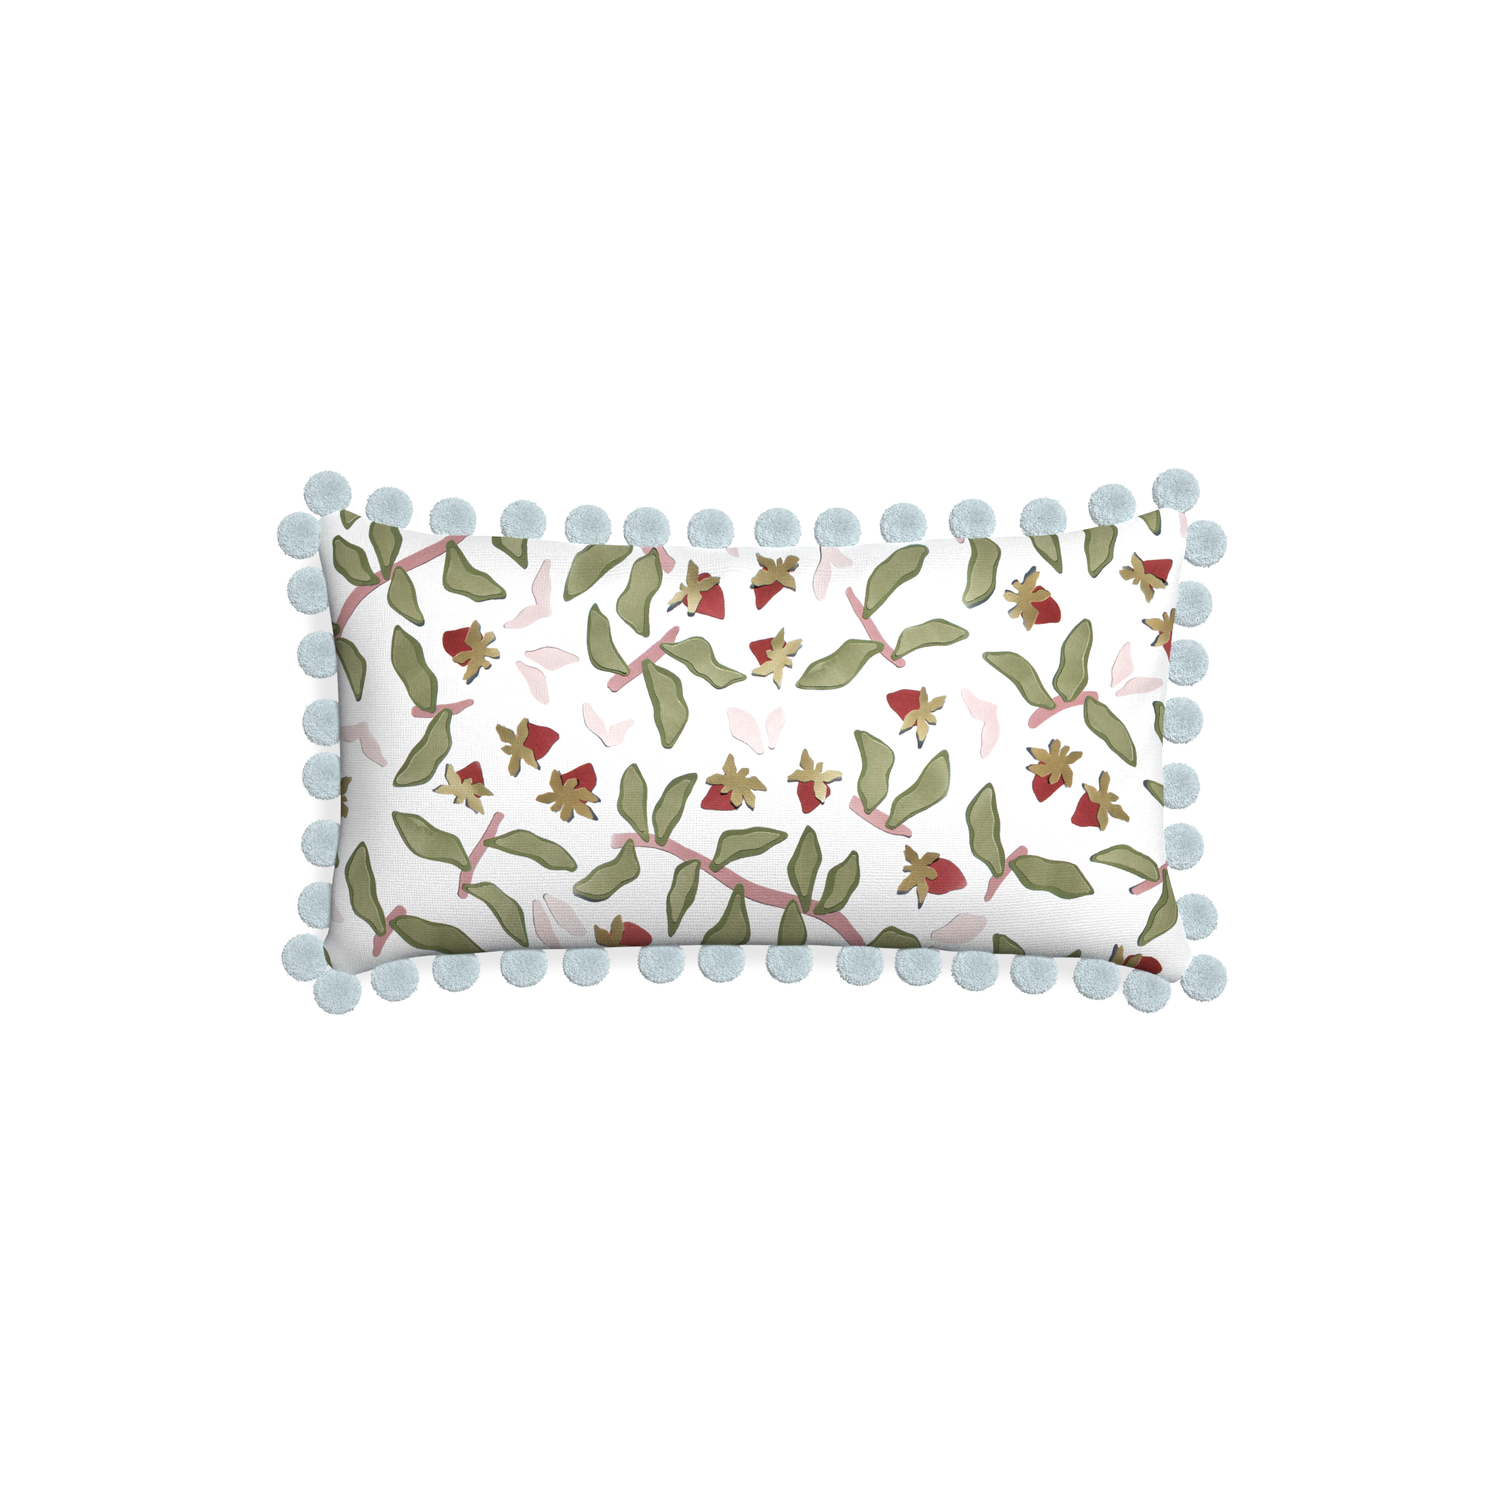 Petite-lumbar nellie custom strawberry & botanicalpillow with powder pom pom on white background